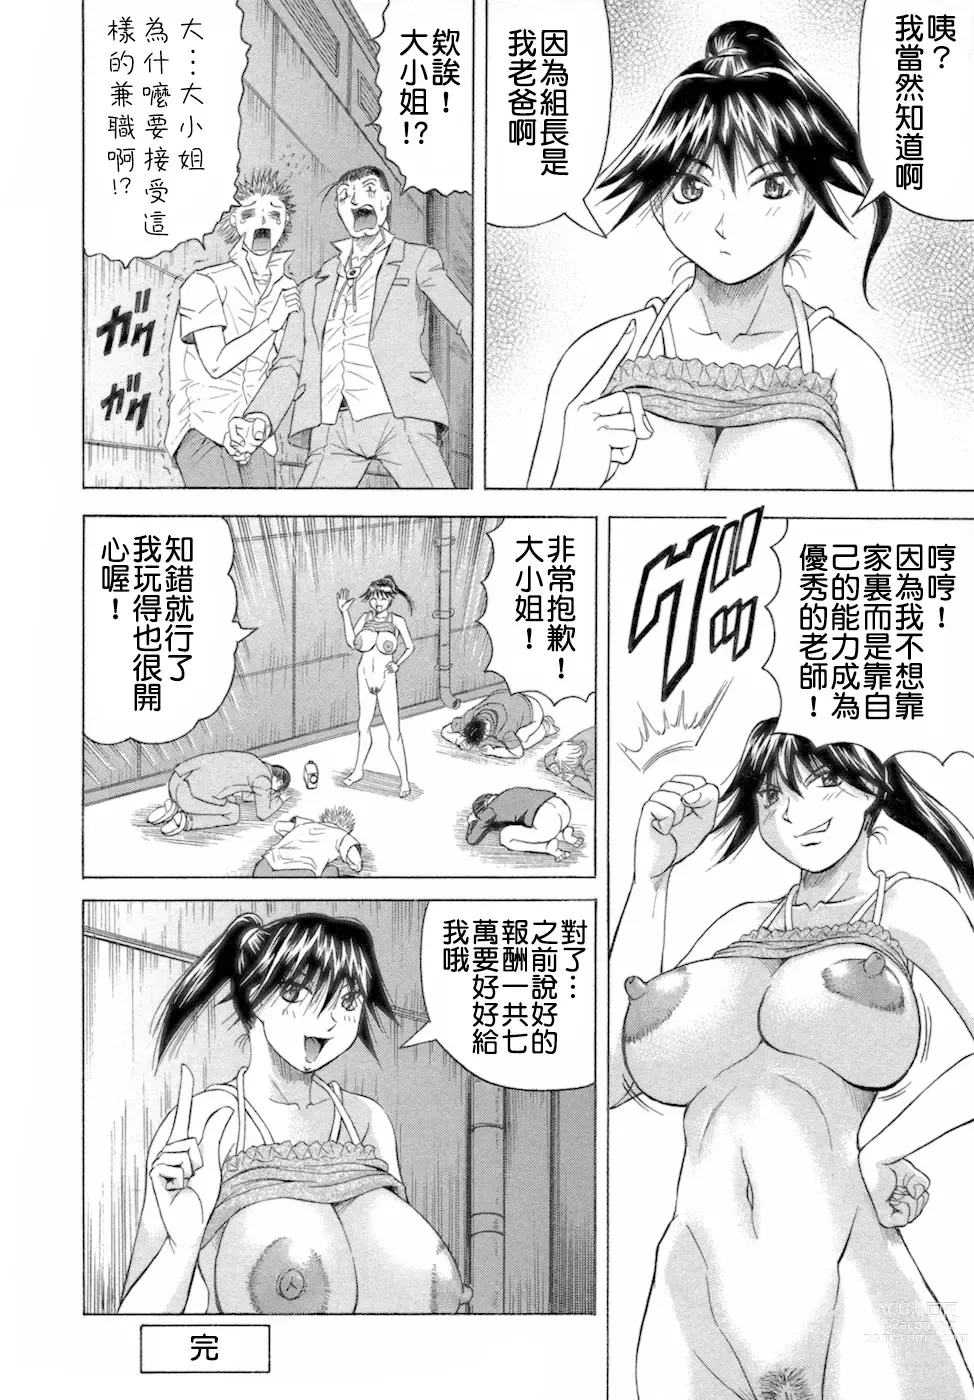 Page 84 of manga Ichigeki Nousatsu Satsuki-sensei